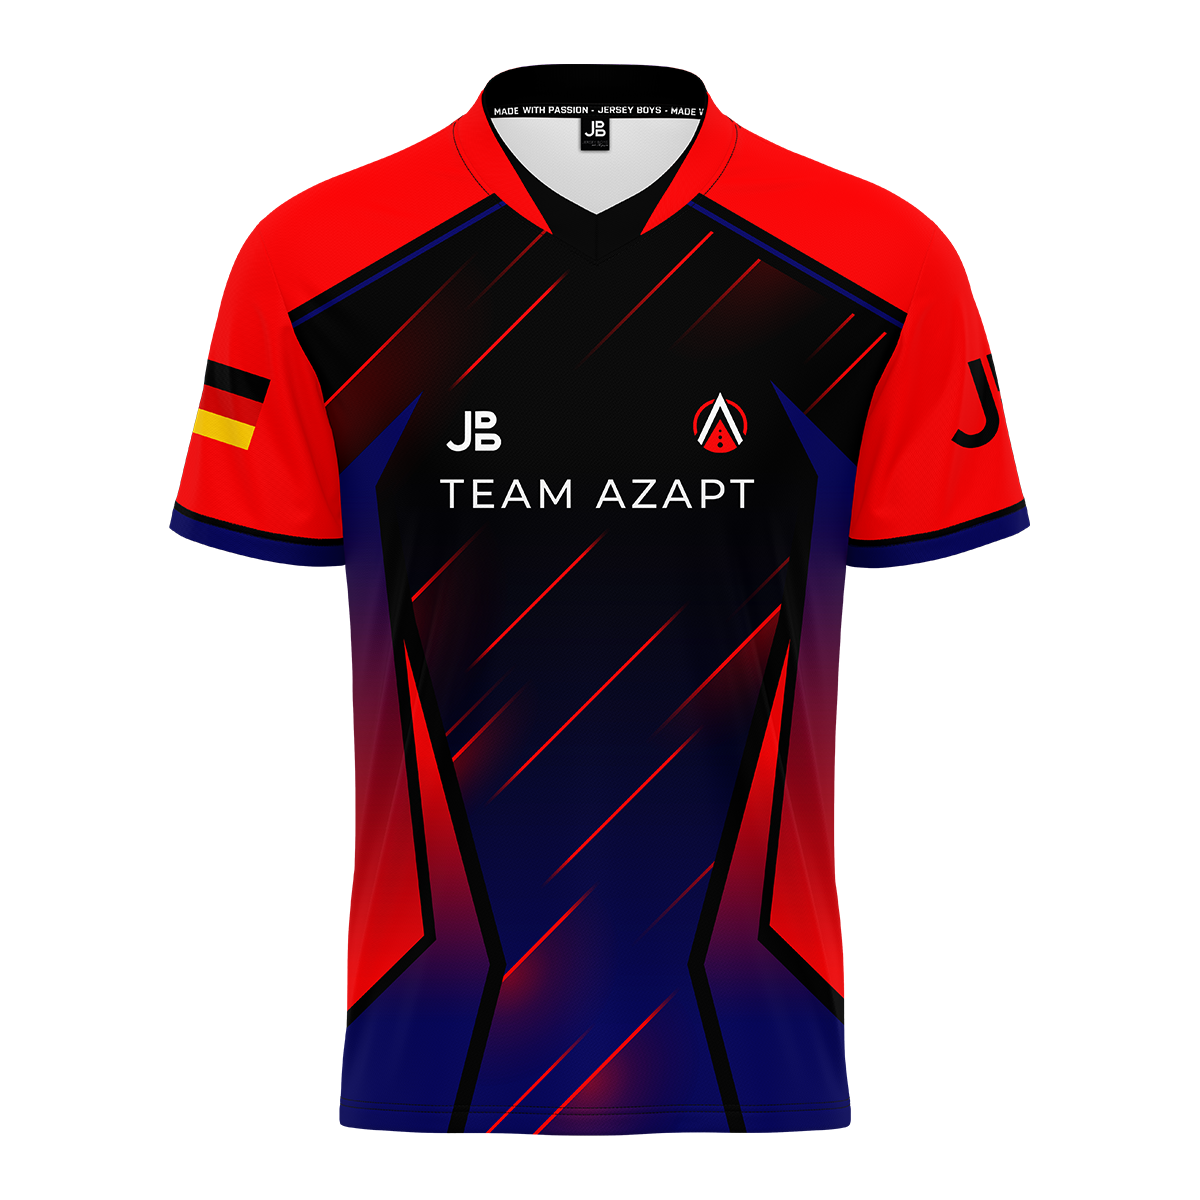 TEAM AZAPT - Jersey 2021